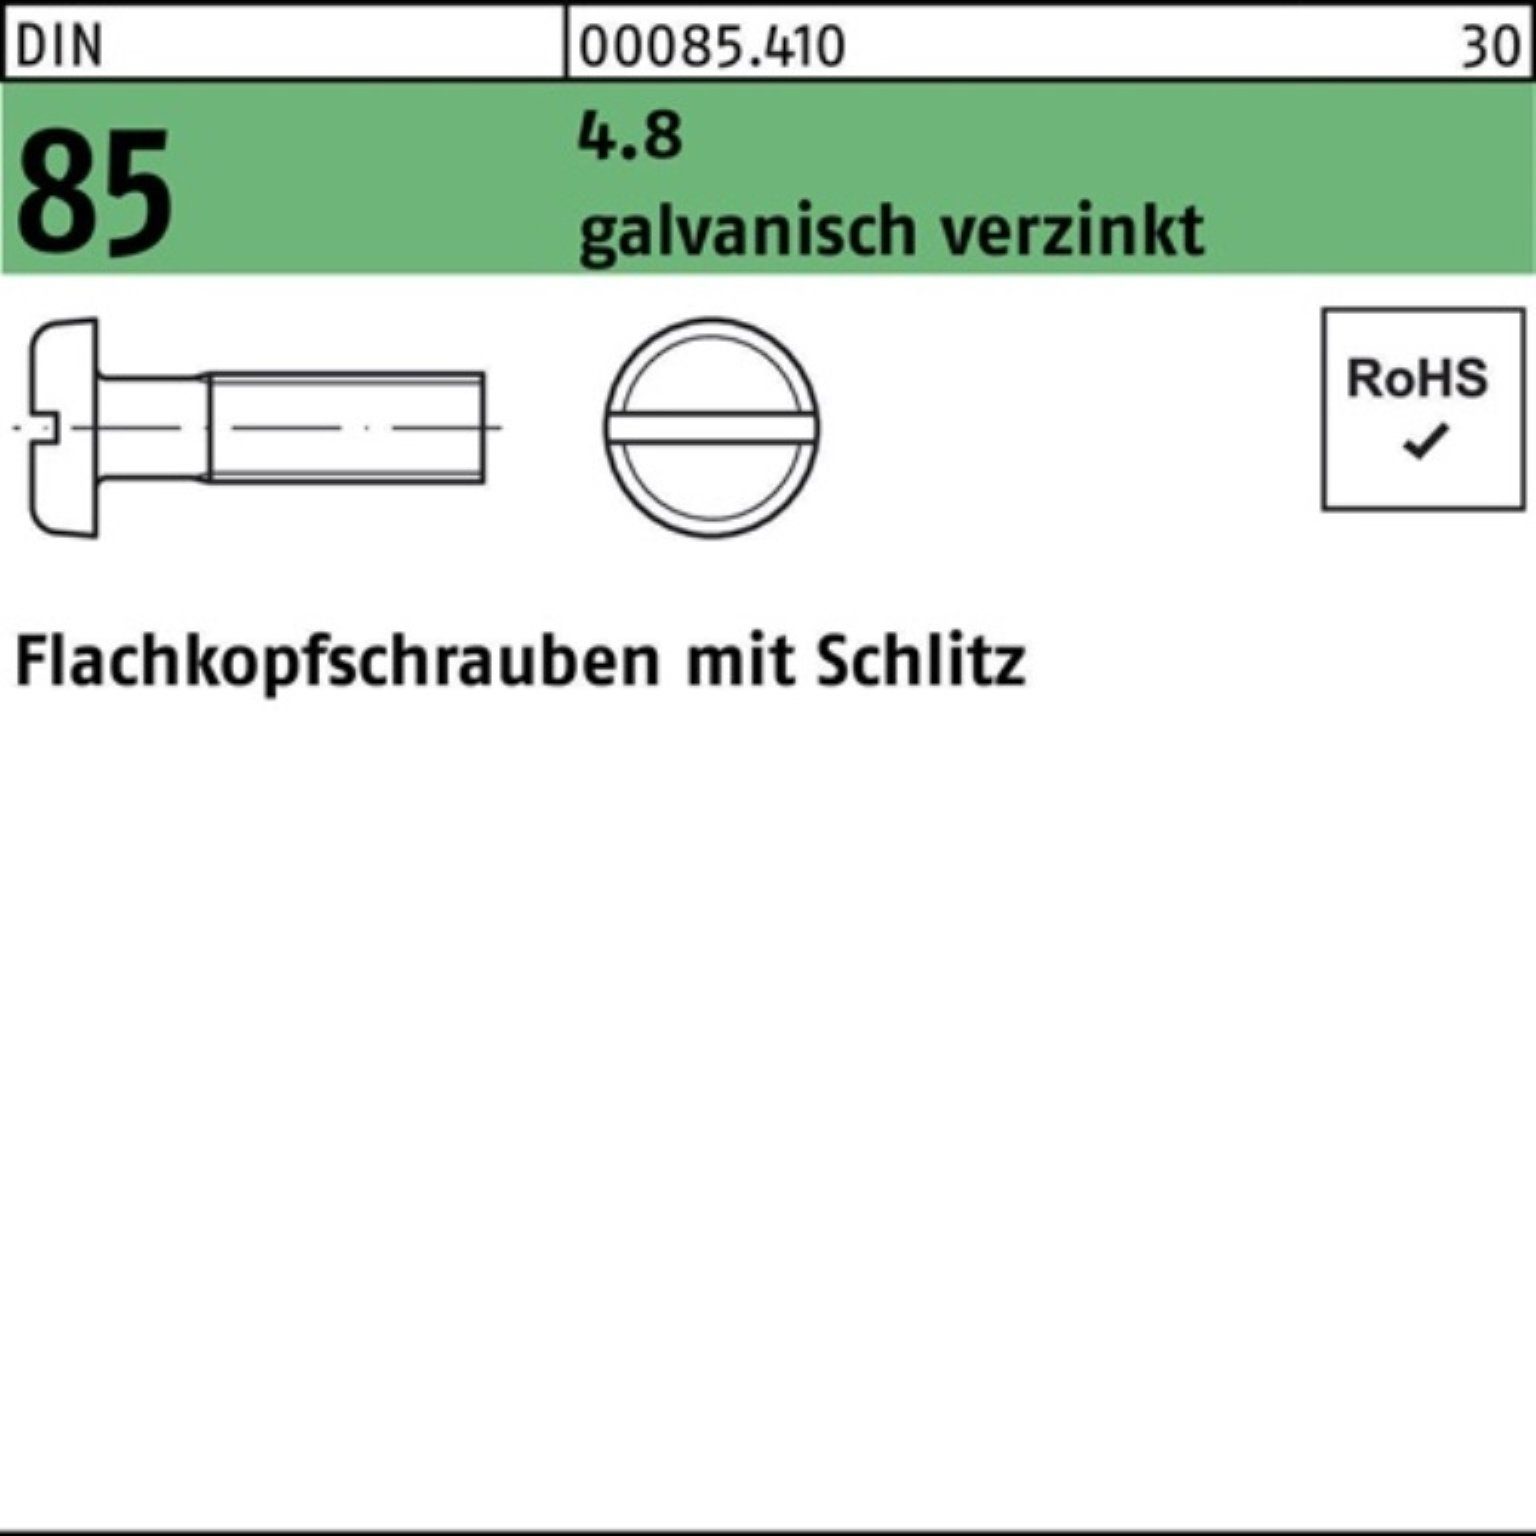 galv.v Pack 1000er DIN 4.8 Reyher 1580 85/ISO Schlitz Flachkopfschraube M5x25 Schraube